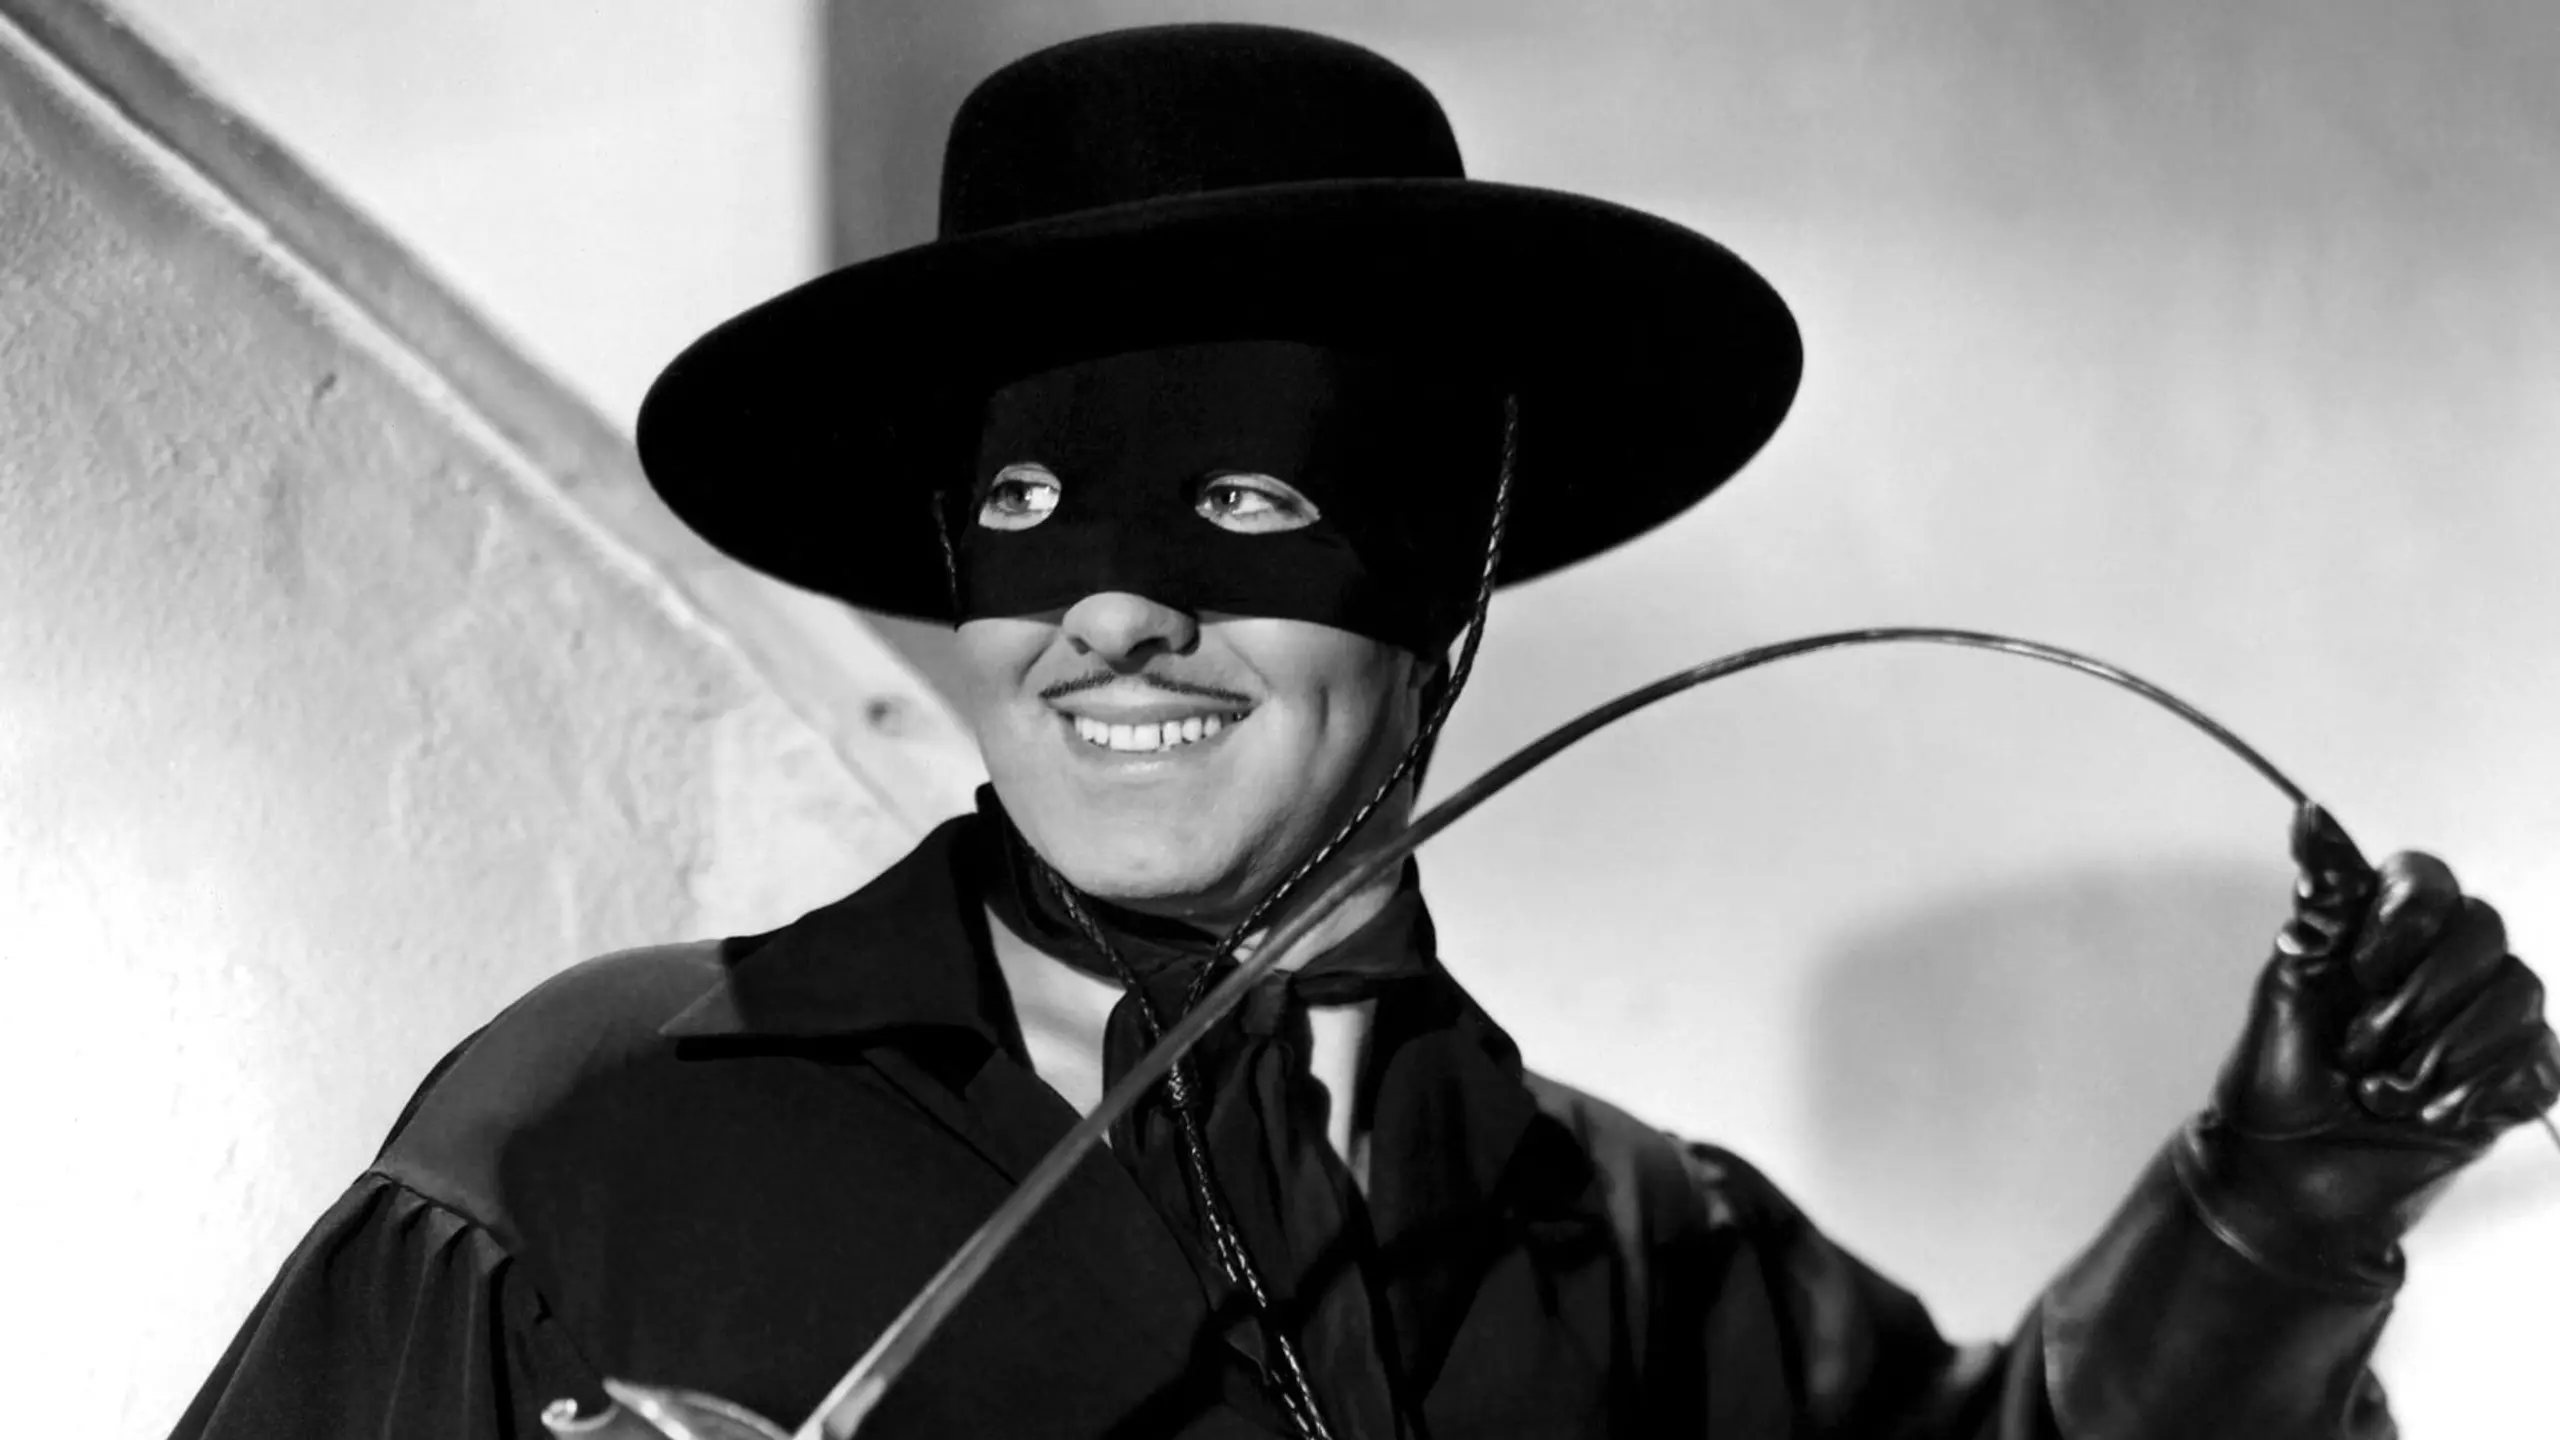 Im Zeichen des Zorro